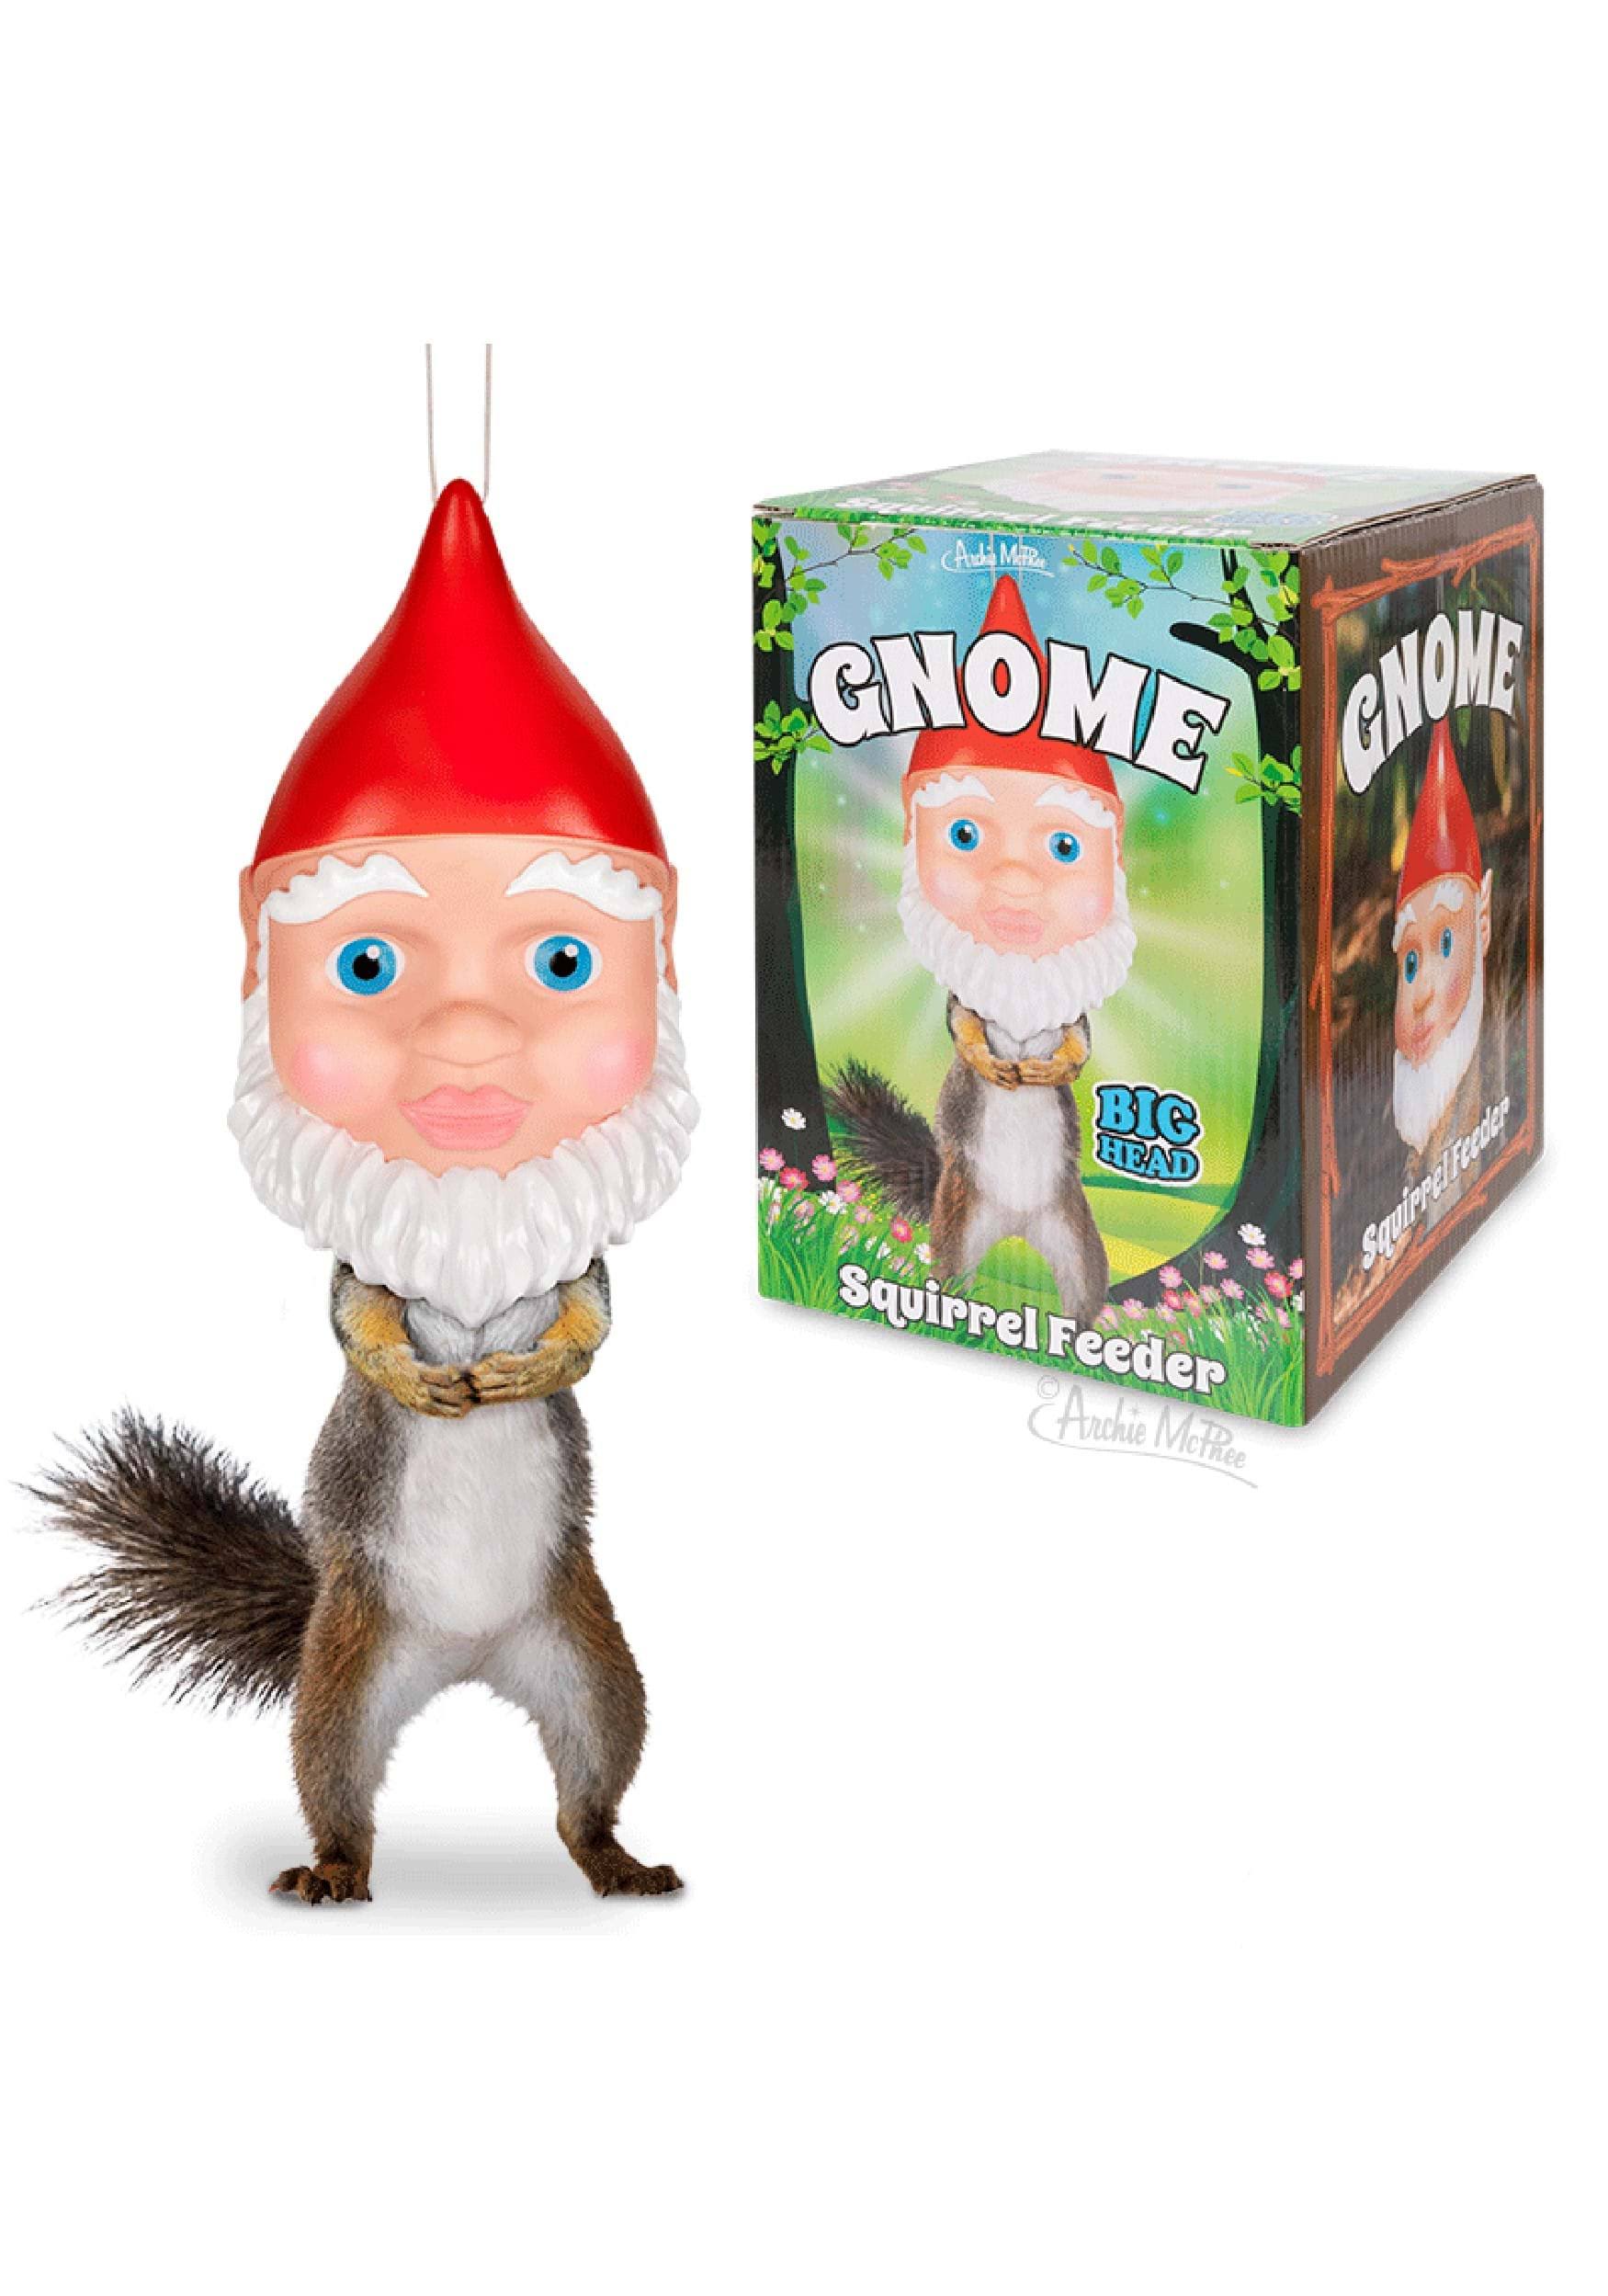 Archie McPhee Gnome Squirrel Feeder